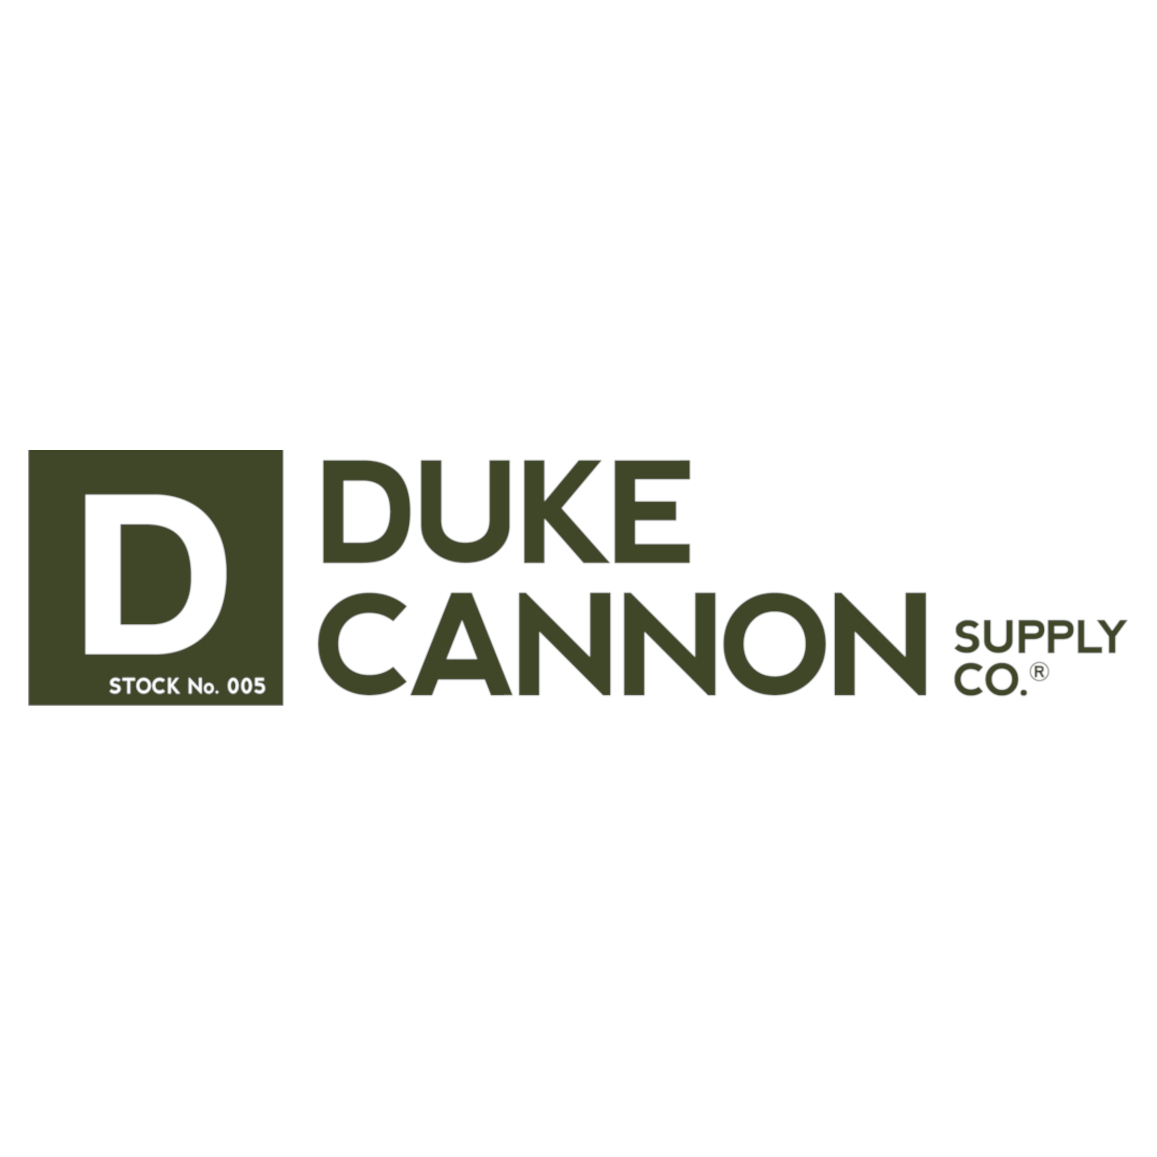 Duke Cannon